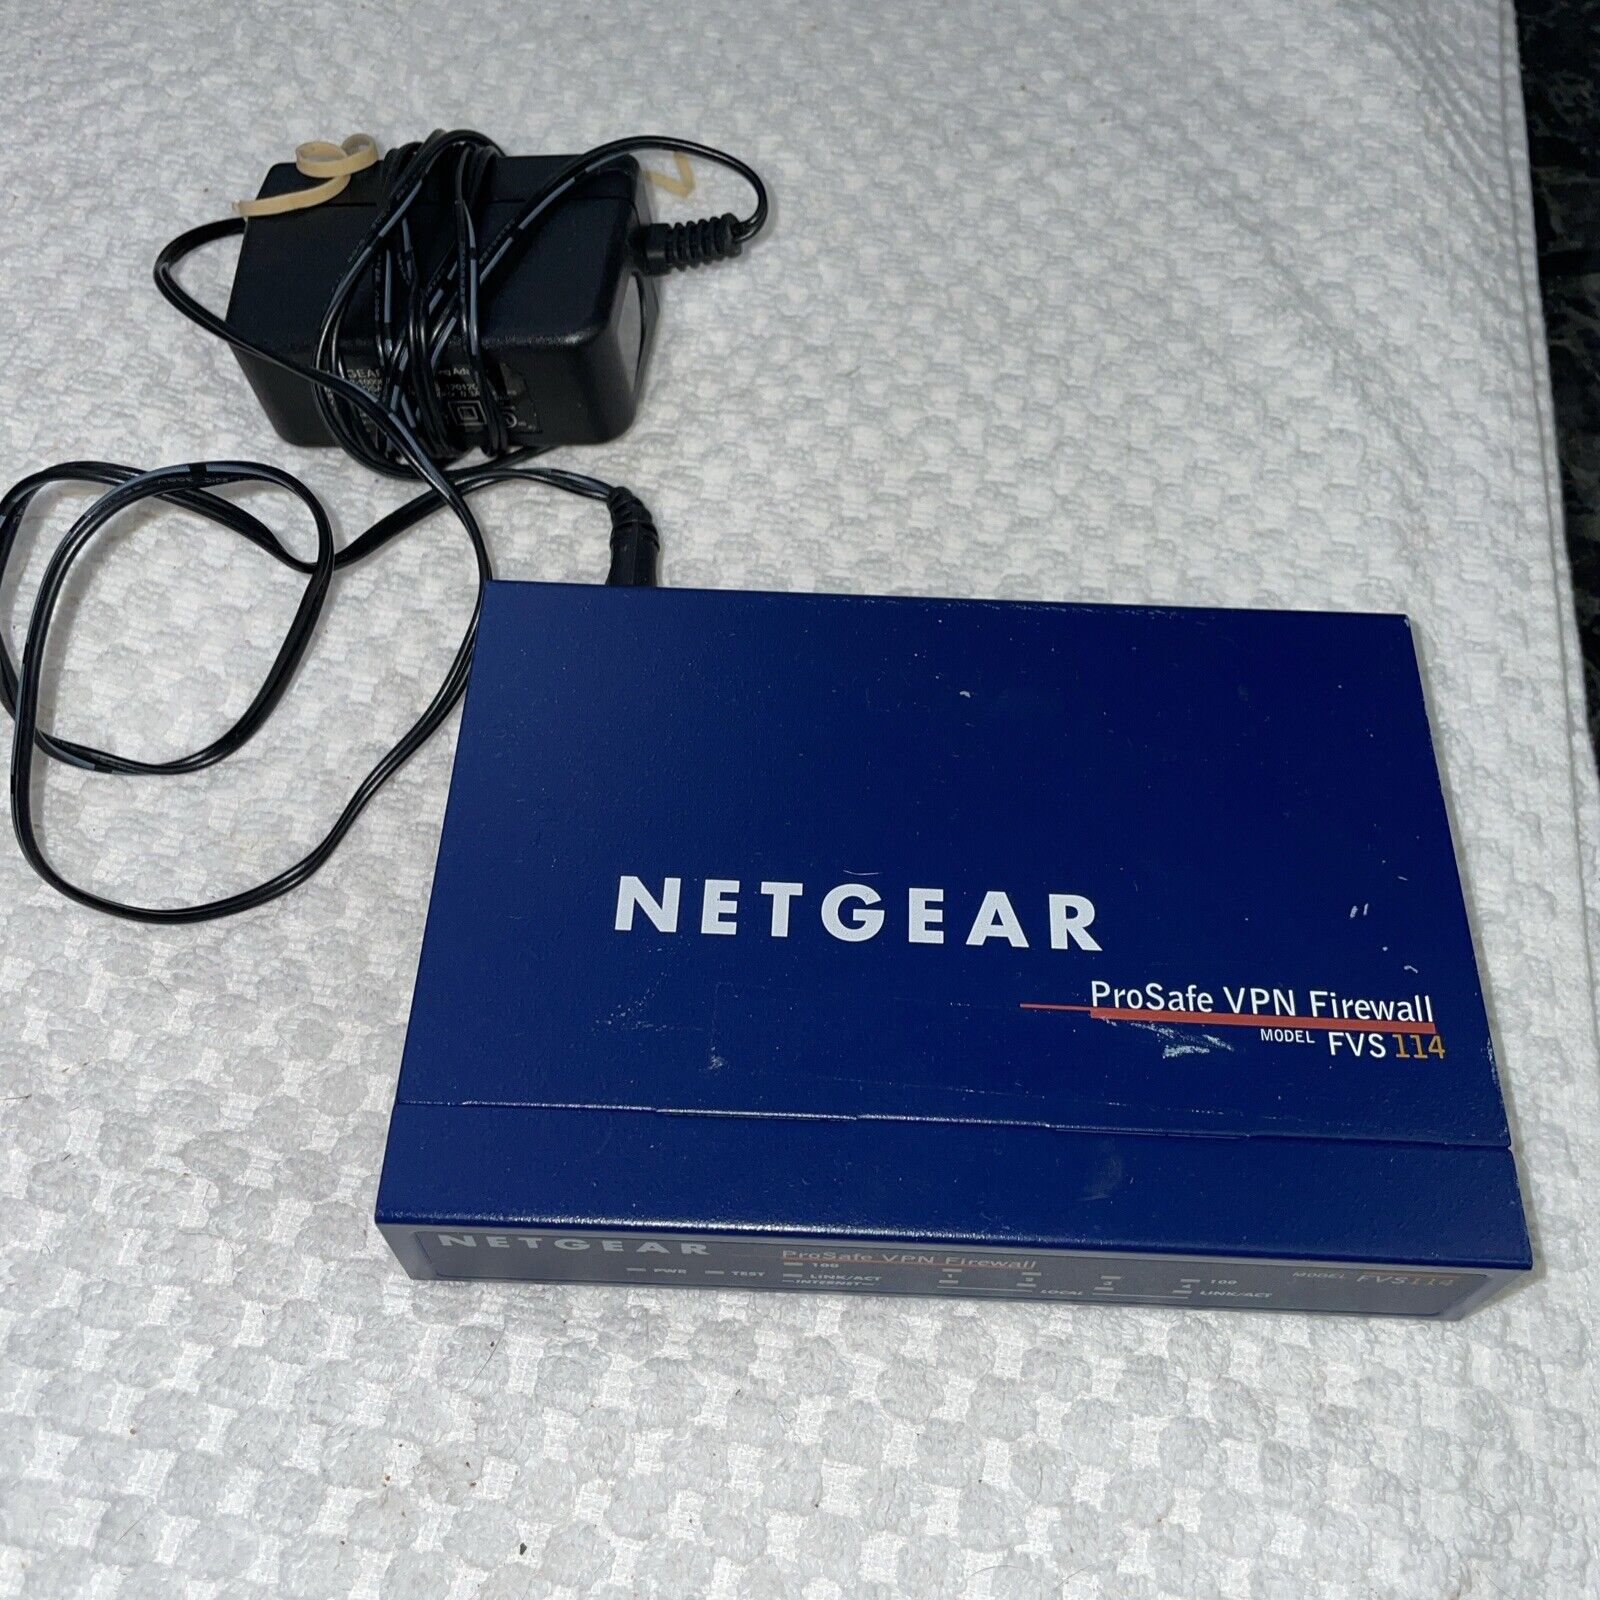 Netgear ProSafeVPN Firewall FVS114 Includes AC Power Supply